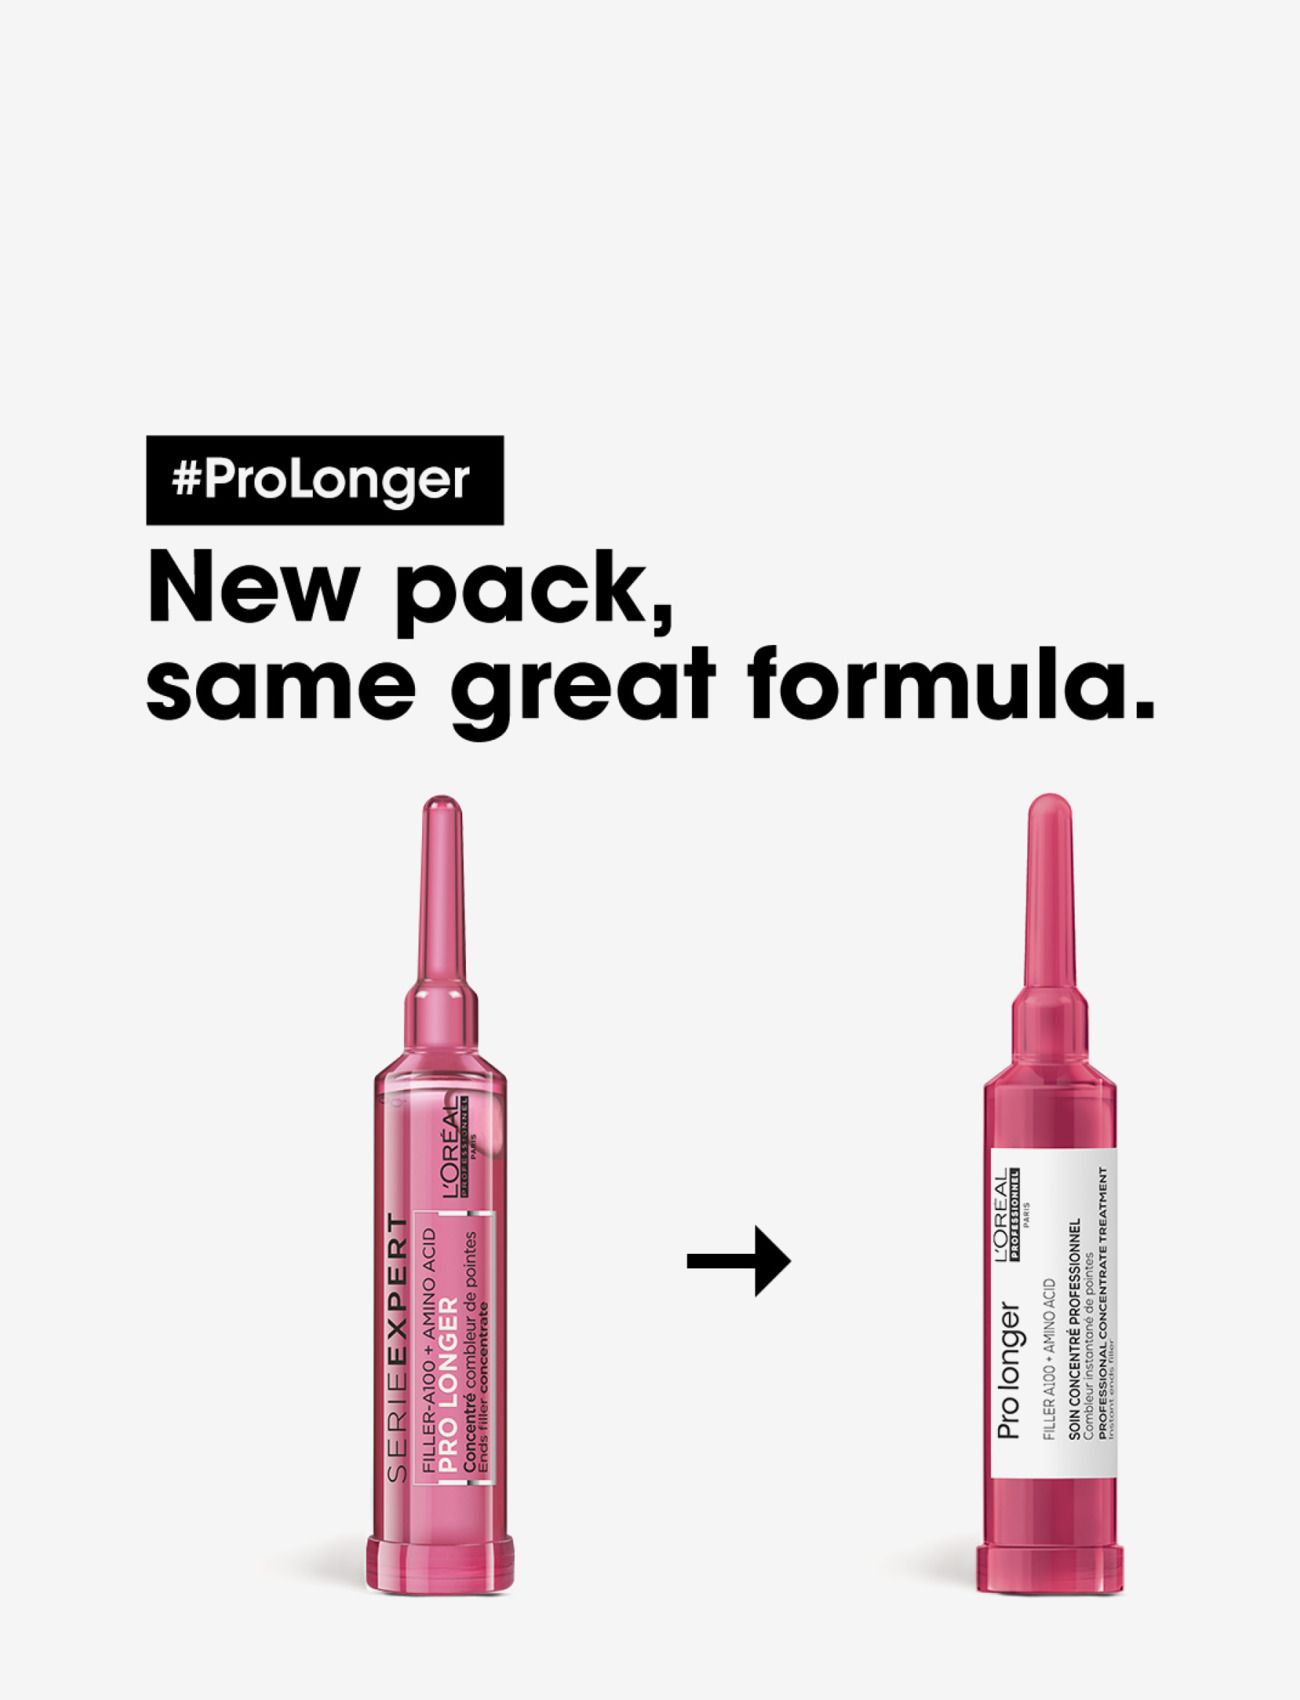 L'Oréal Professionnel - Pro Longer Concentrat - laveste priser - clear - 1